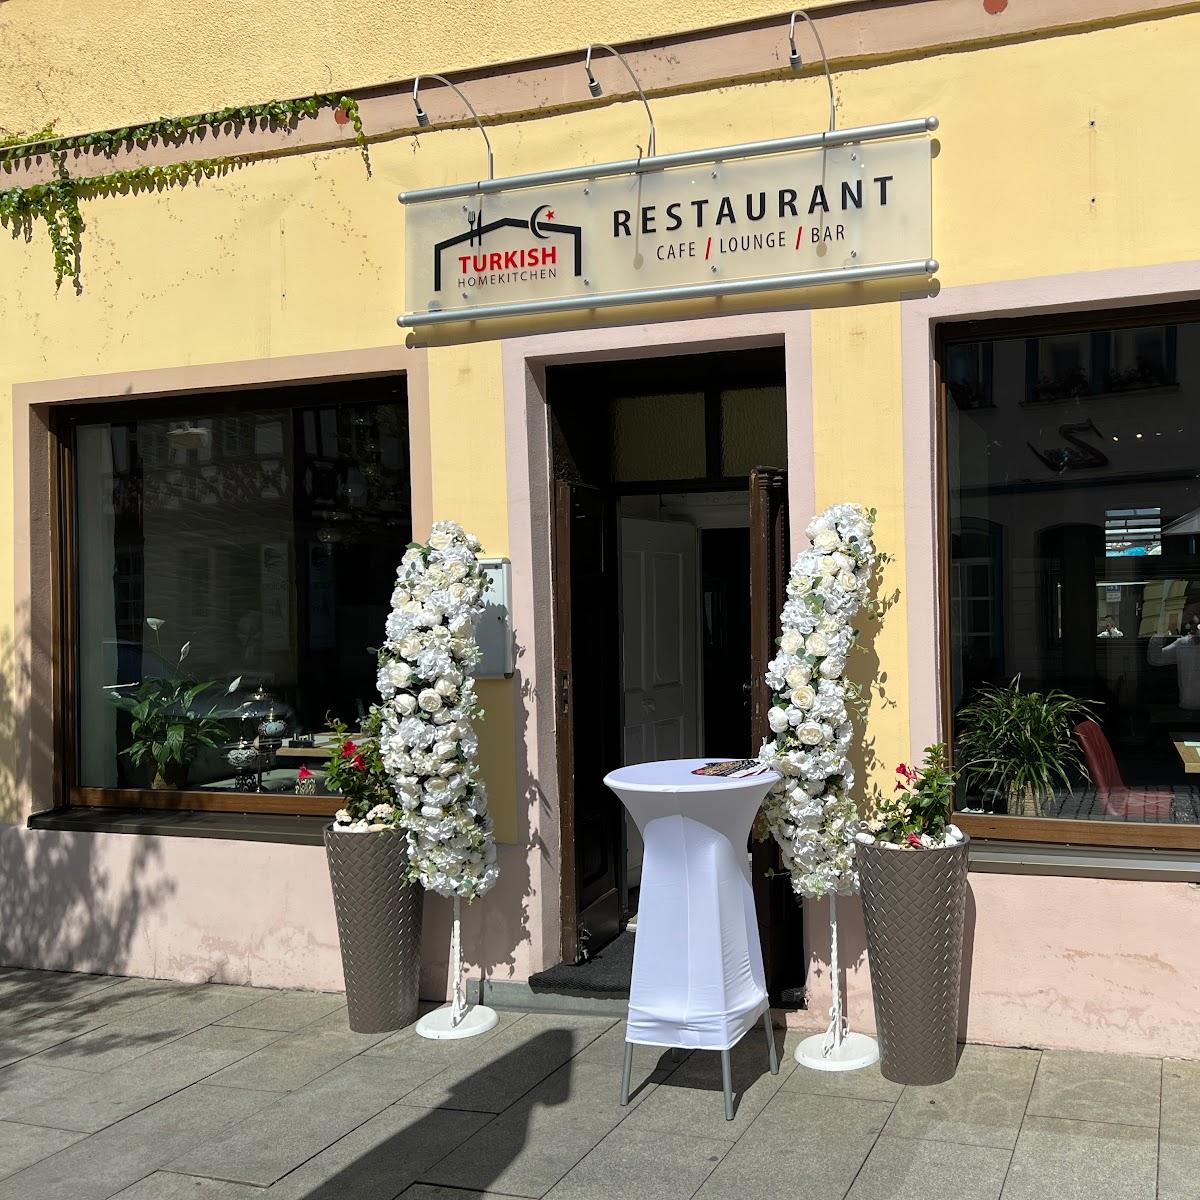 Restaurant "Turkishhomekitchen" in Forchheim